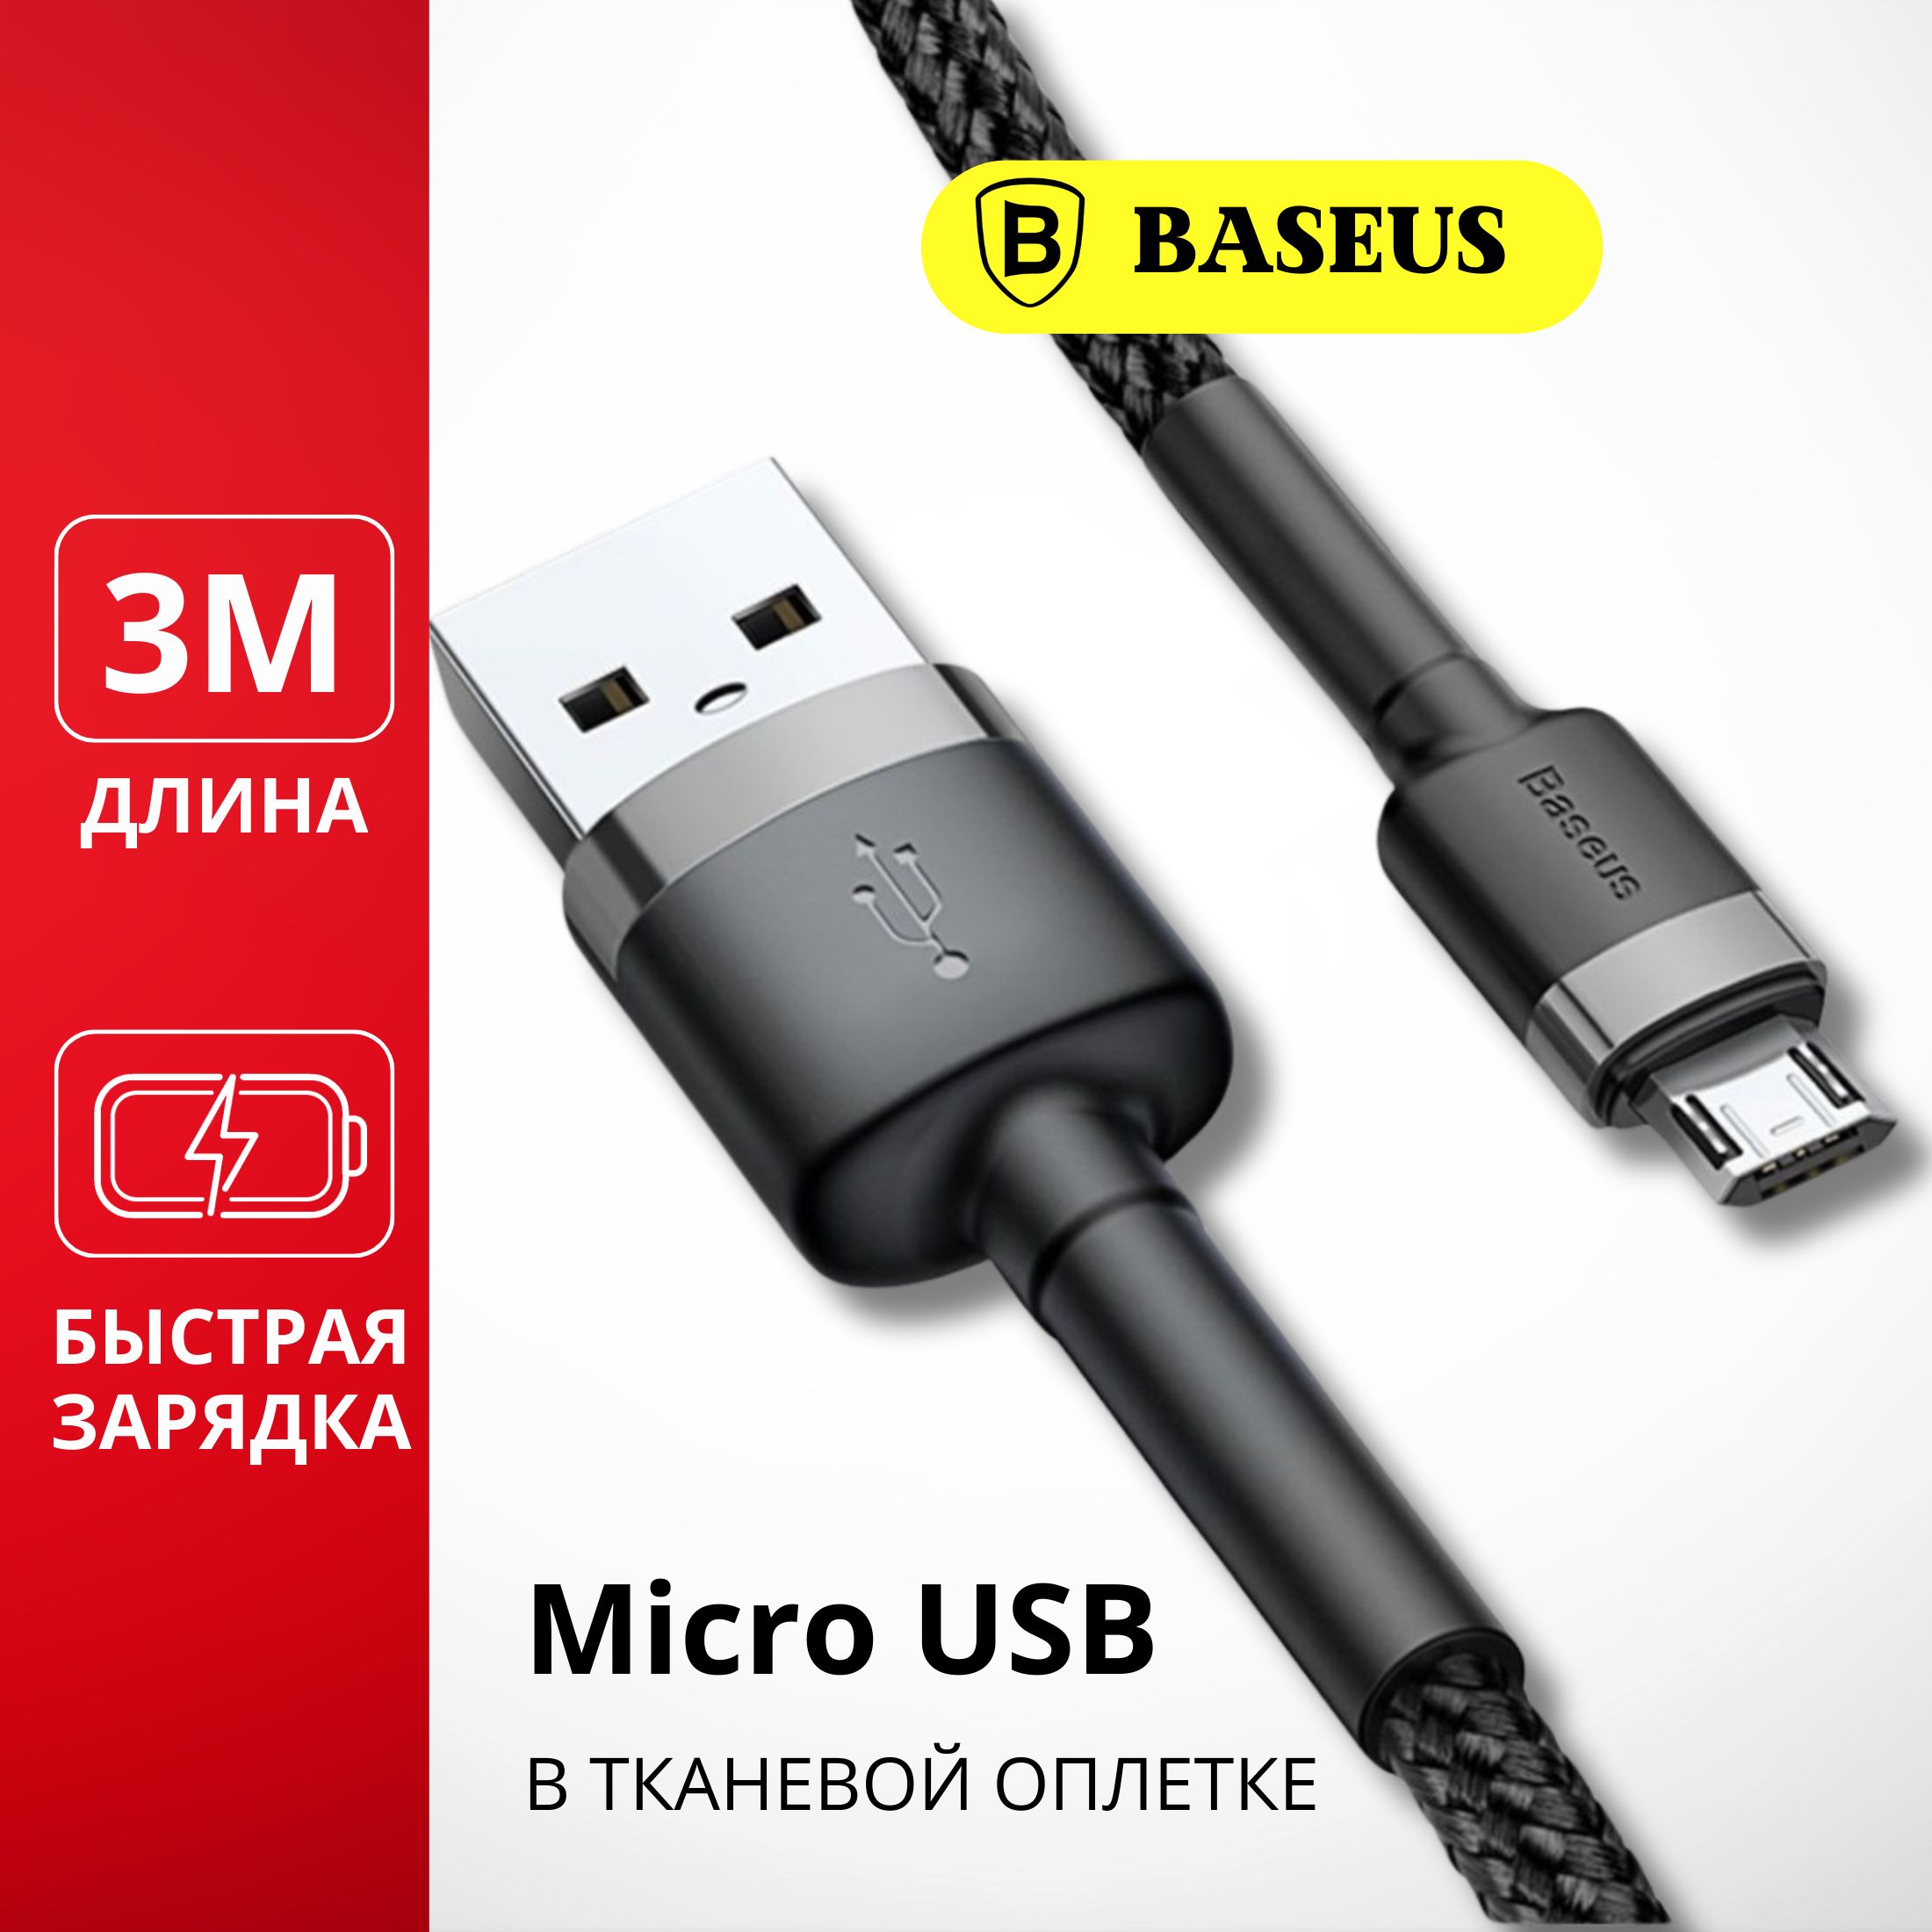 BaseusКабельдлямобильныхустройствUSB2.0Type-A/micro-USB2.0Type-A,3м,черный